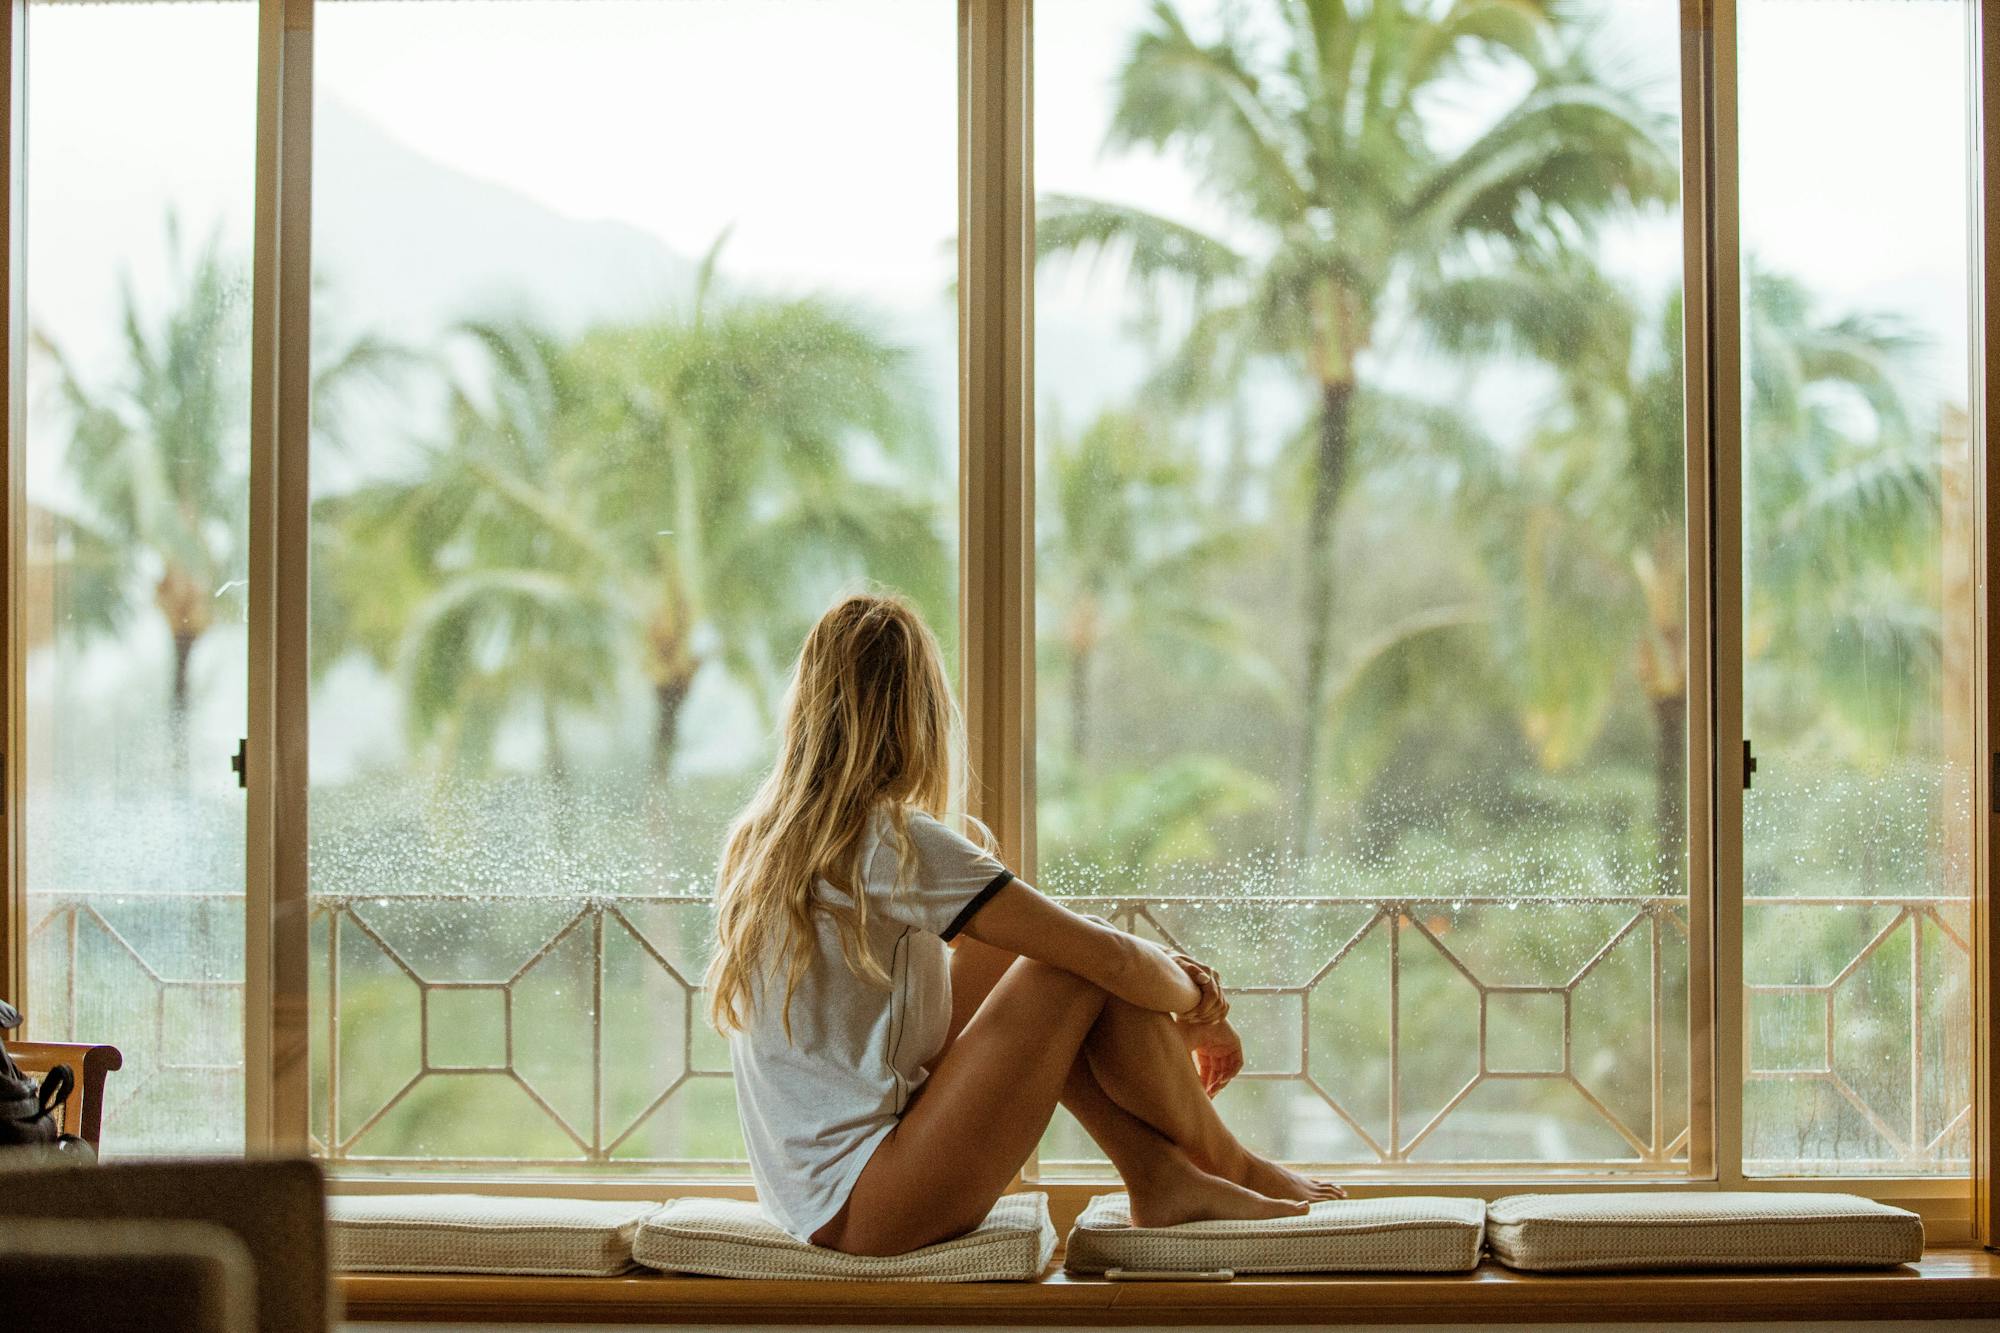 Eine junge Frau sitzt auf der Fensterbank und blickt nach draußen in die Palmen-Landschaft. Das Bild strahlt sommerliche, tropische Gefühle aus.